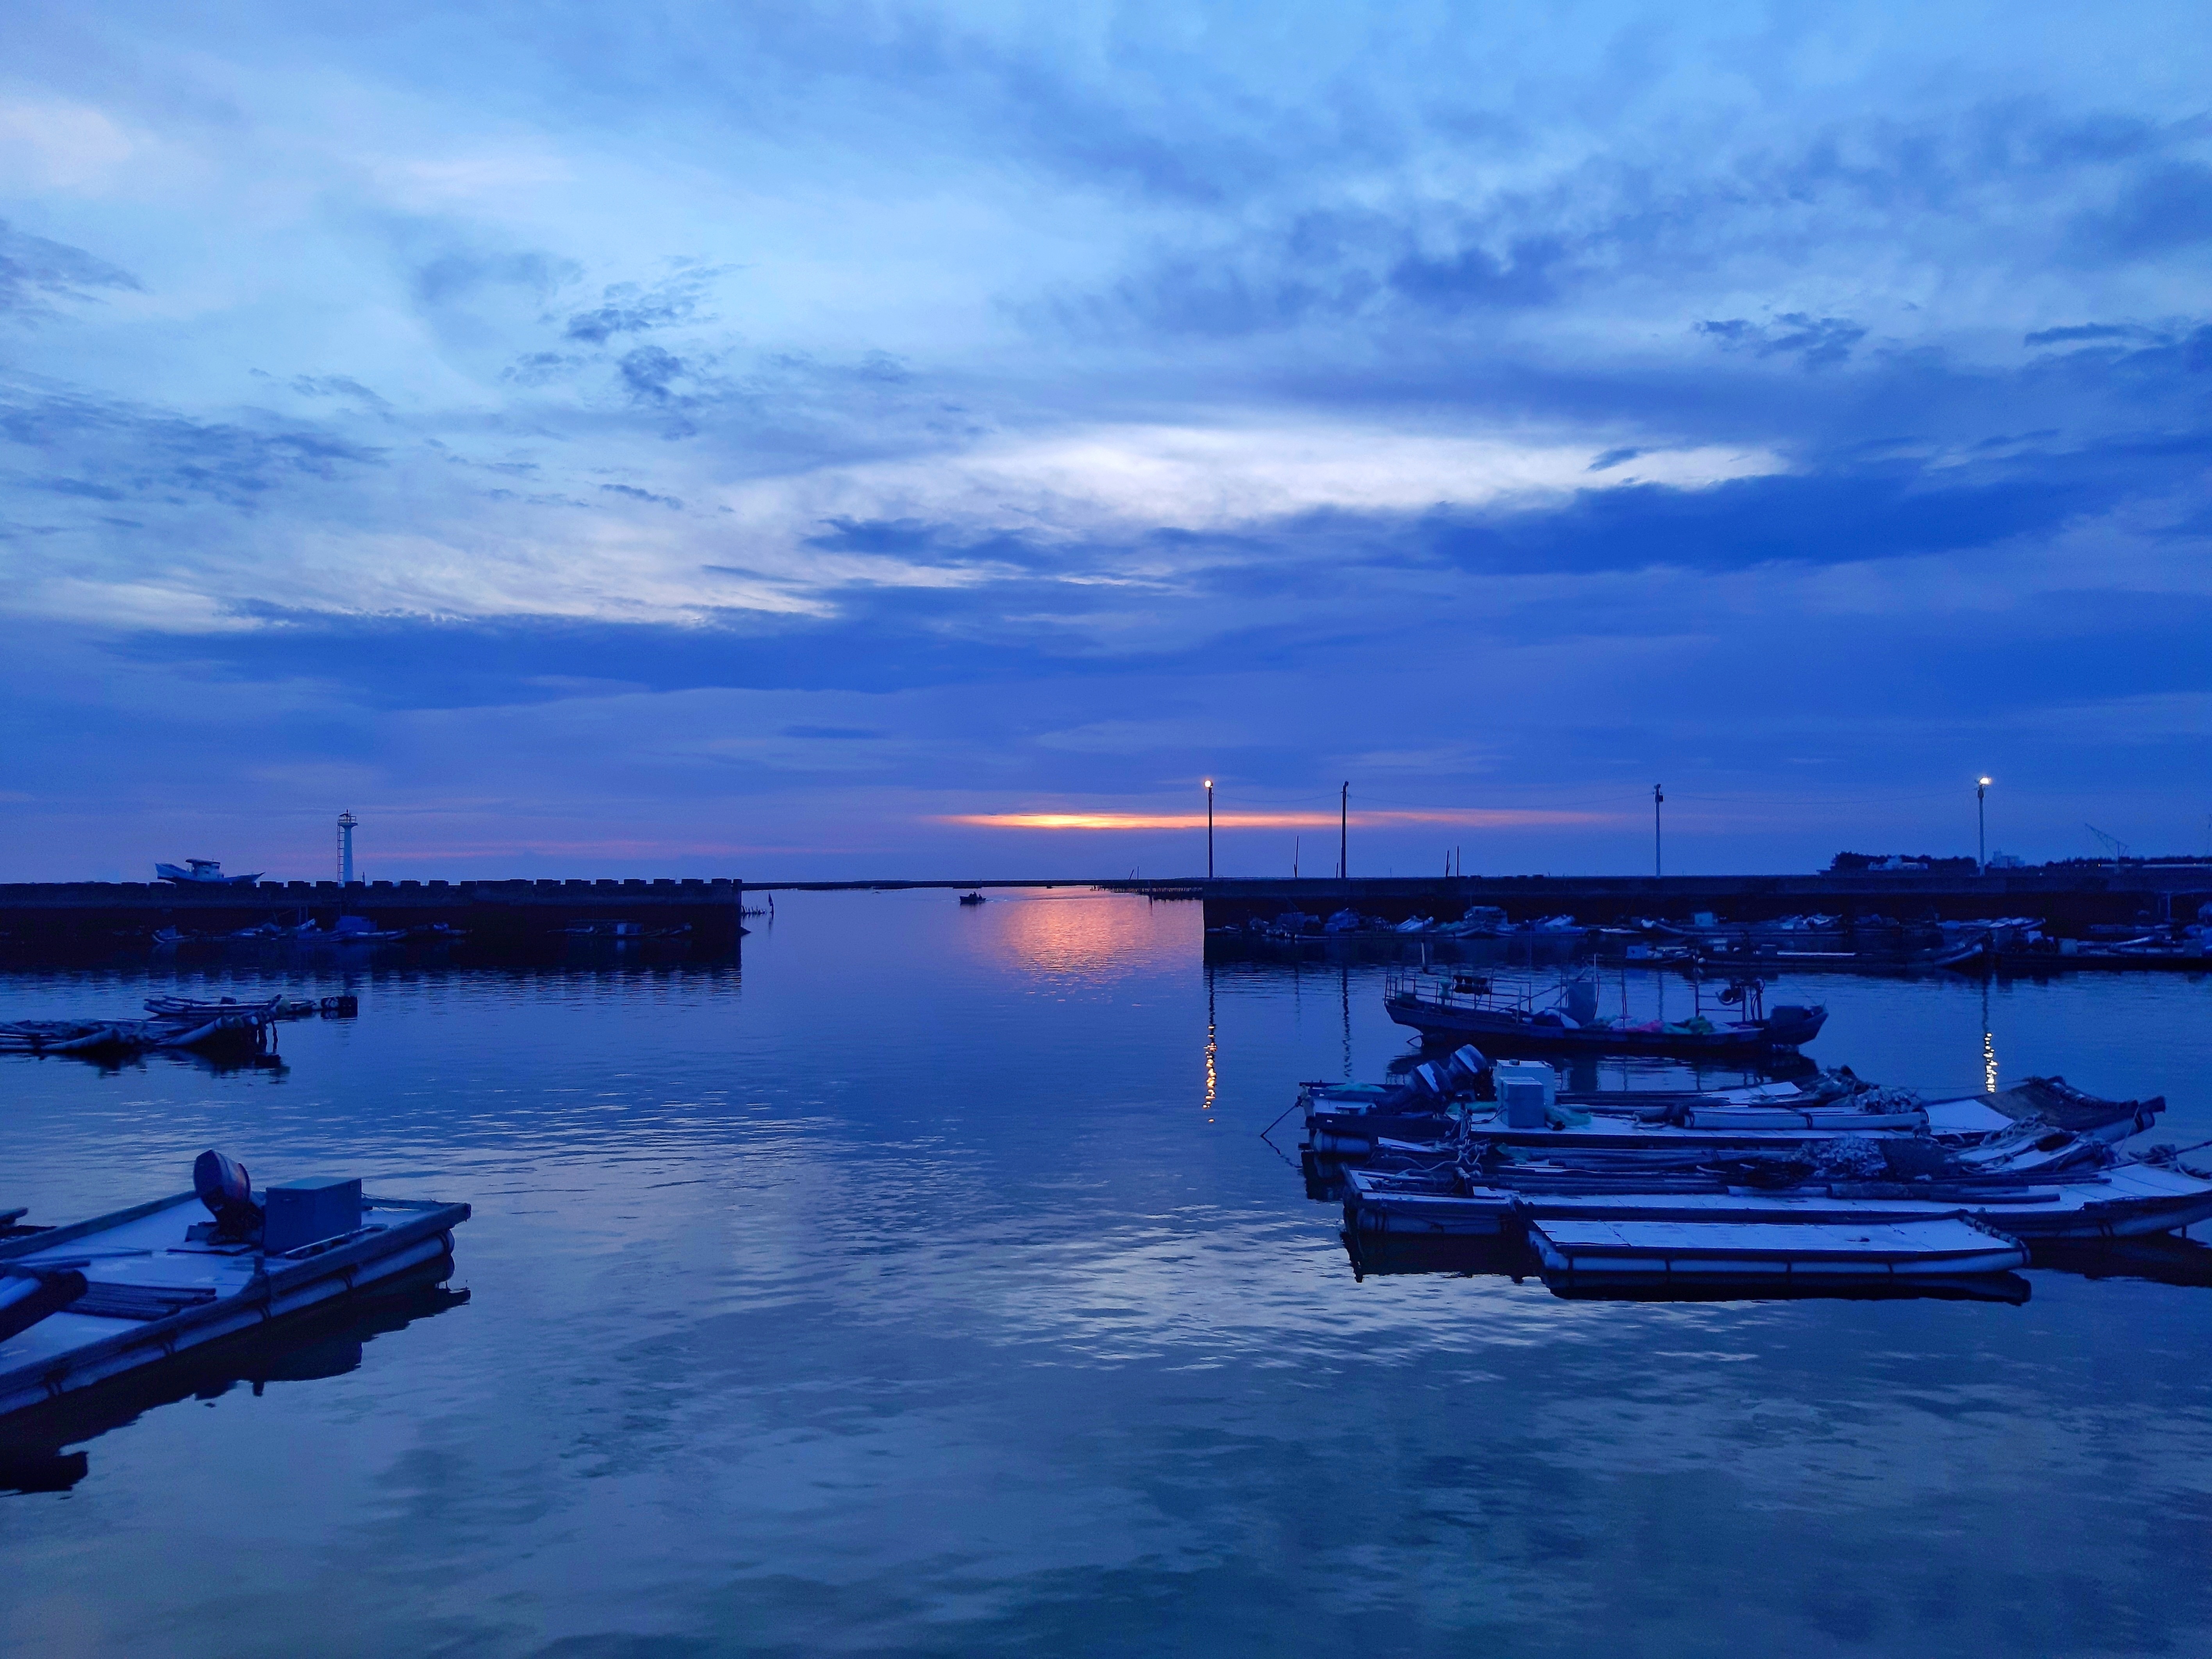 夜幕降臨前的漁港-封面照